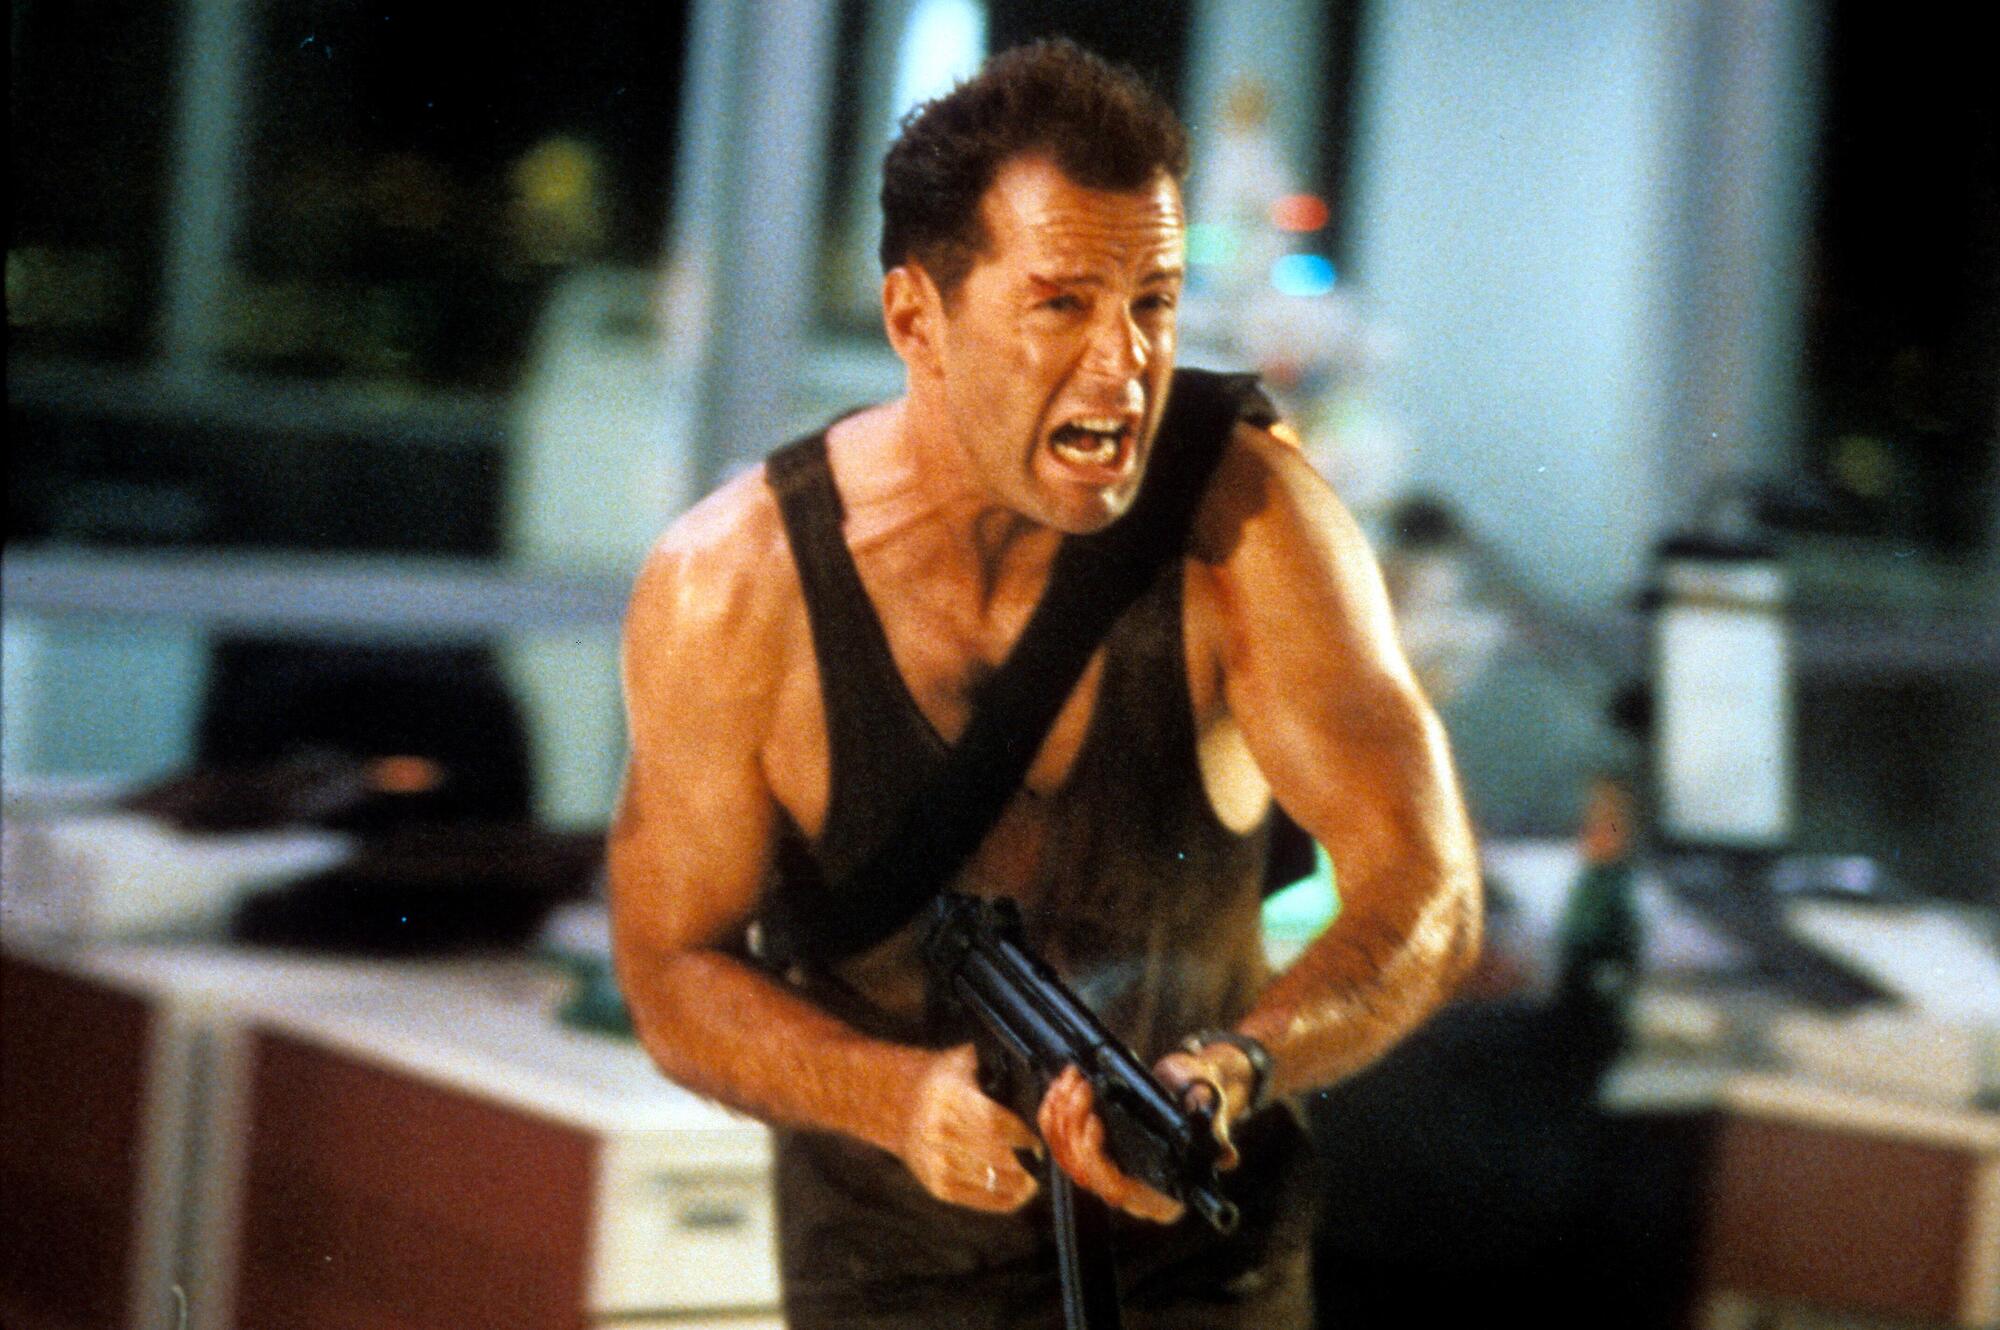 Bruce Willis in Die Hard, Trappola di cristallo (1988)